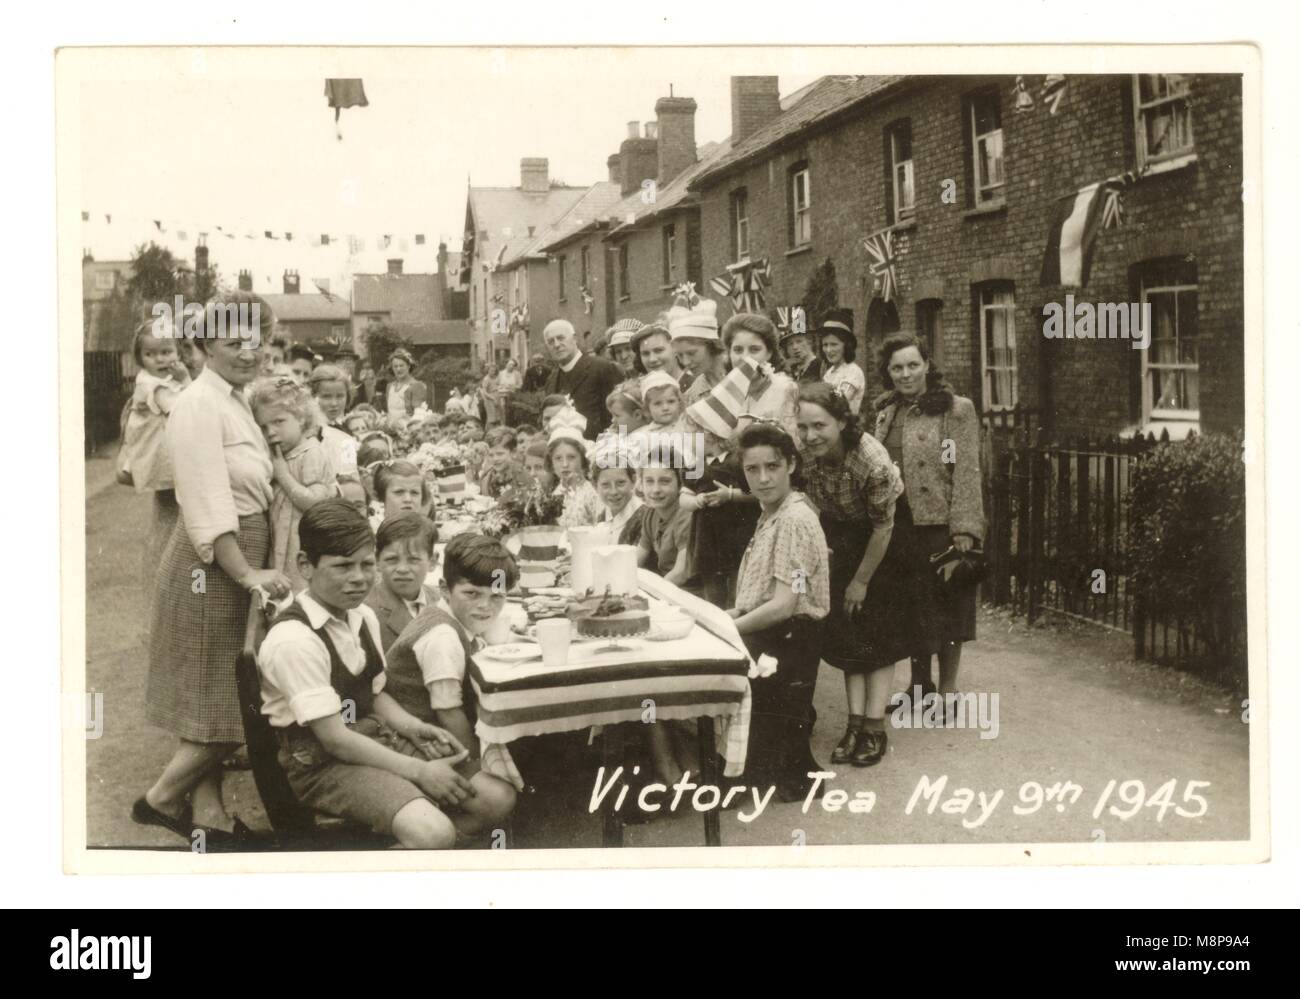 Originale festa di strada del tè della Vittoria dell'era WW2, 9 maggio 1945, per celebrare la fine della seconda guerra mondiale, Stanstead Abbotts, Hertfordshire orientale, Inghilterra, Regno Unito Foto Stock